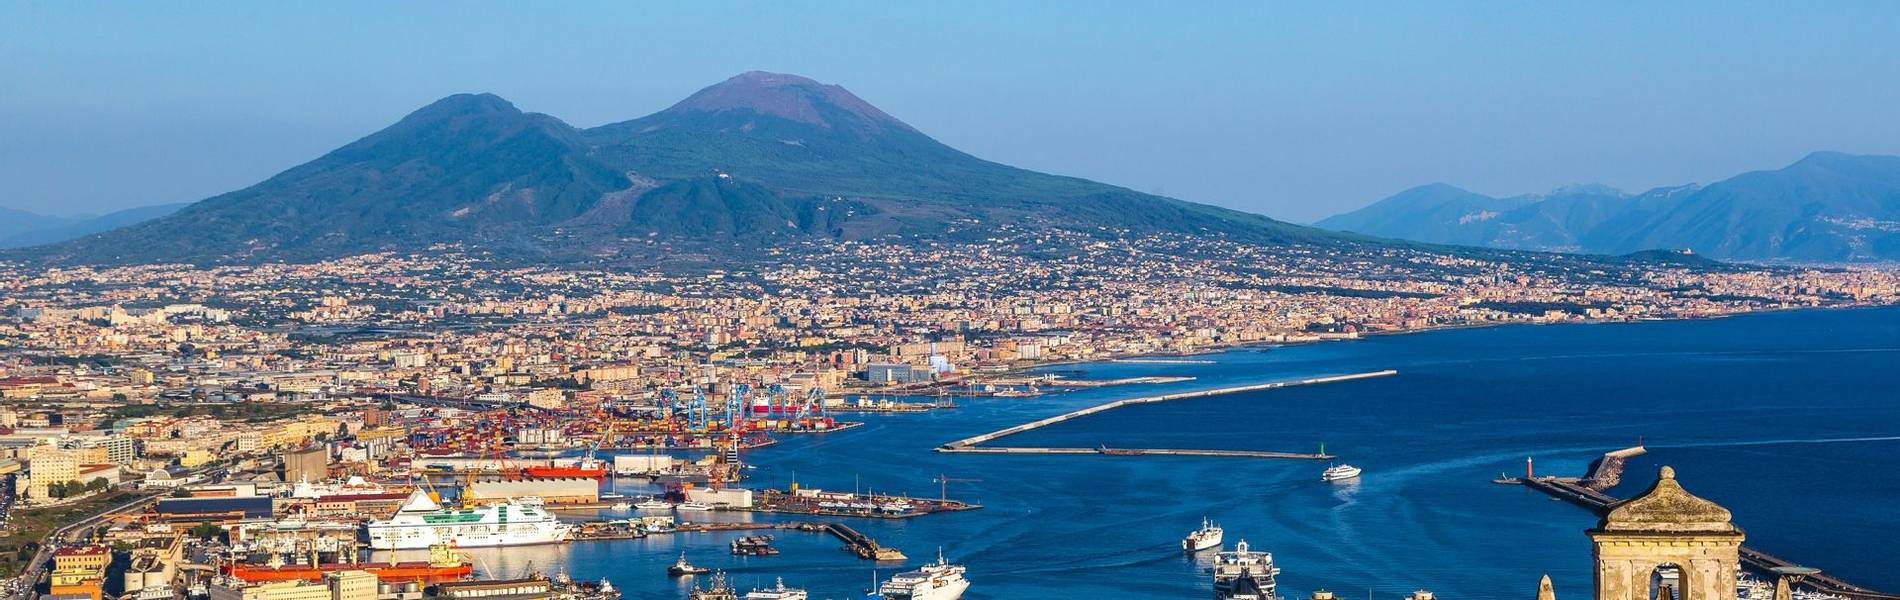 Bay of Naples.jpg